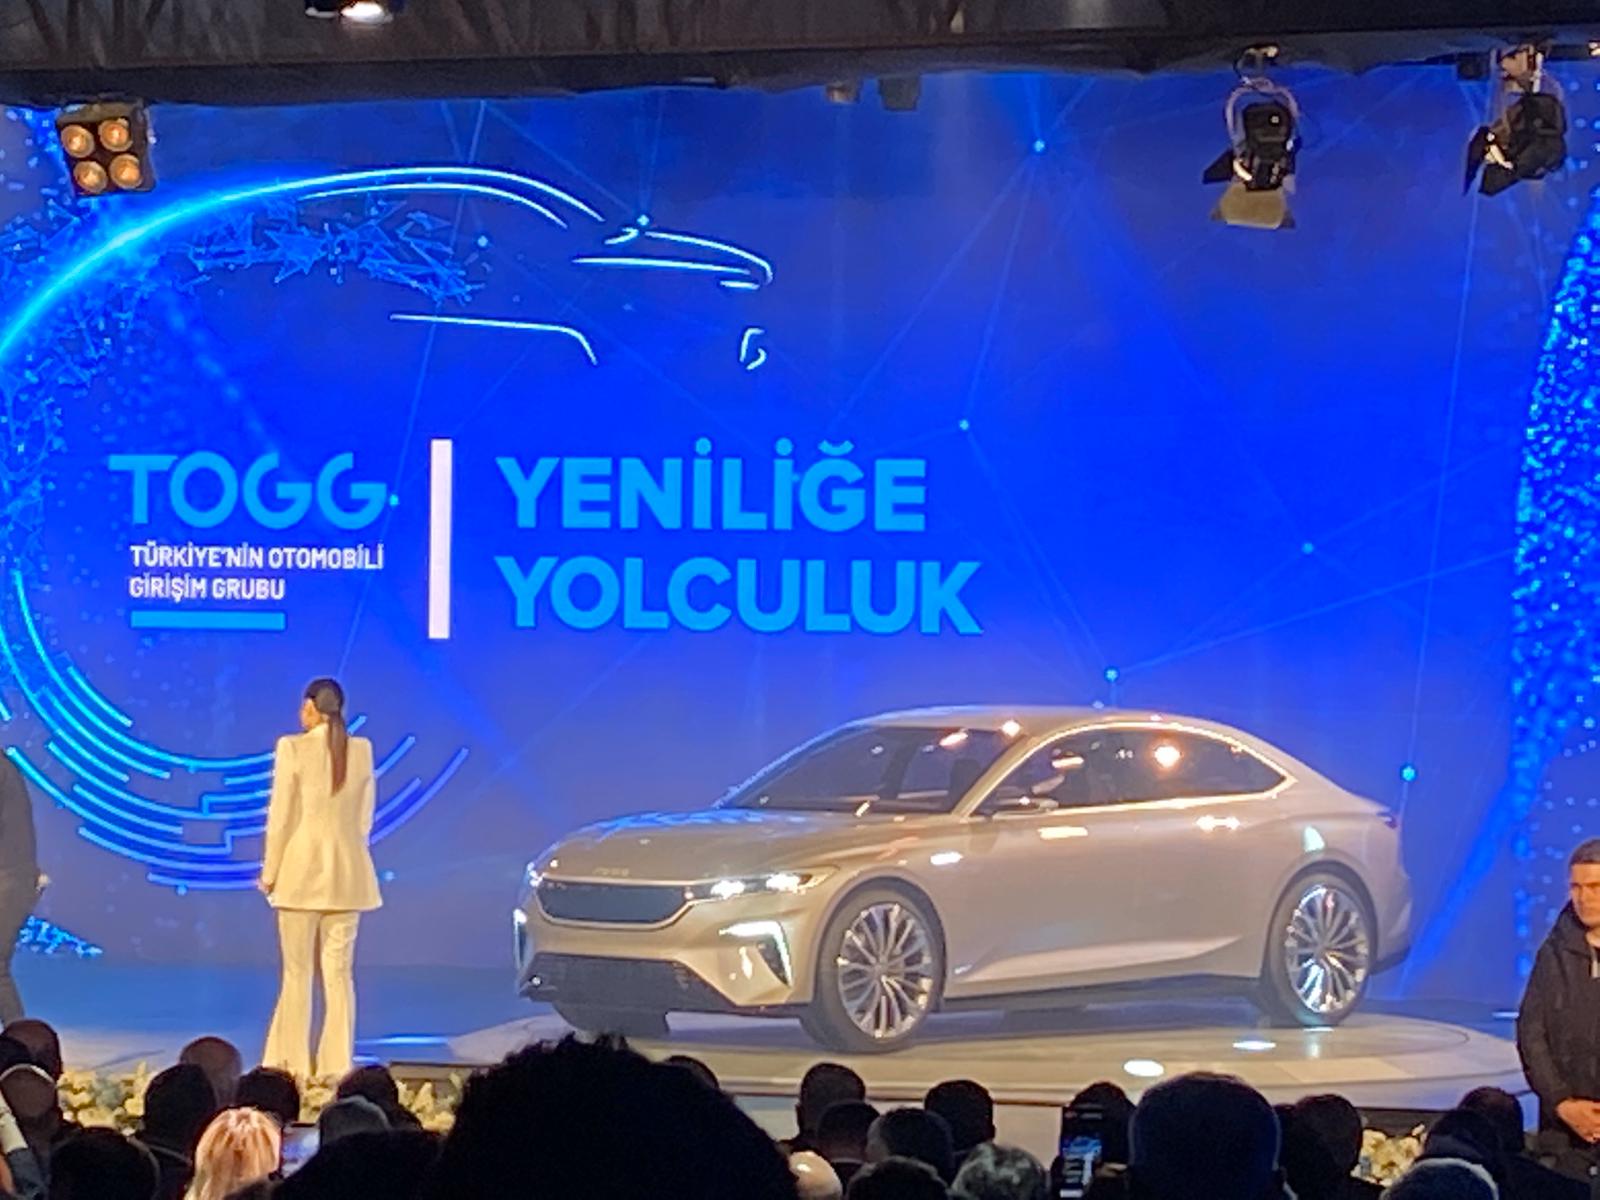 Turkiyenin Yerli Otomobili Logosu  : Tanıtımdan Önce Kesinlik Kazanan Logo, Tasarım Açısından Hem Geçmişteki Önemli Bir Ana Göndermede Bulunuyor.